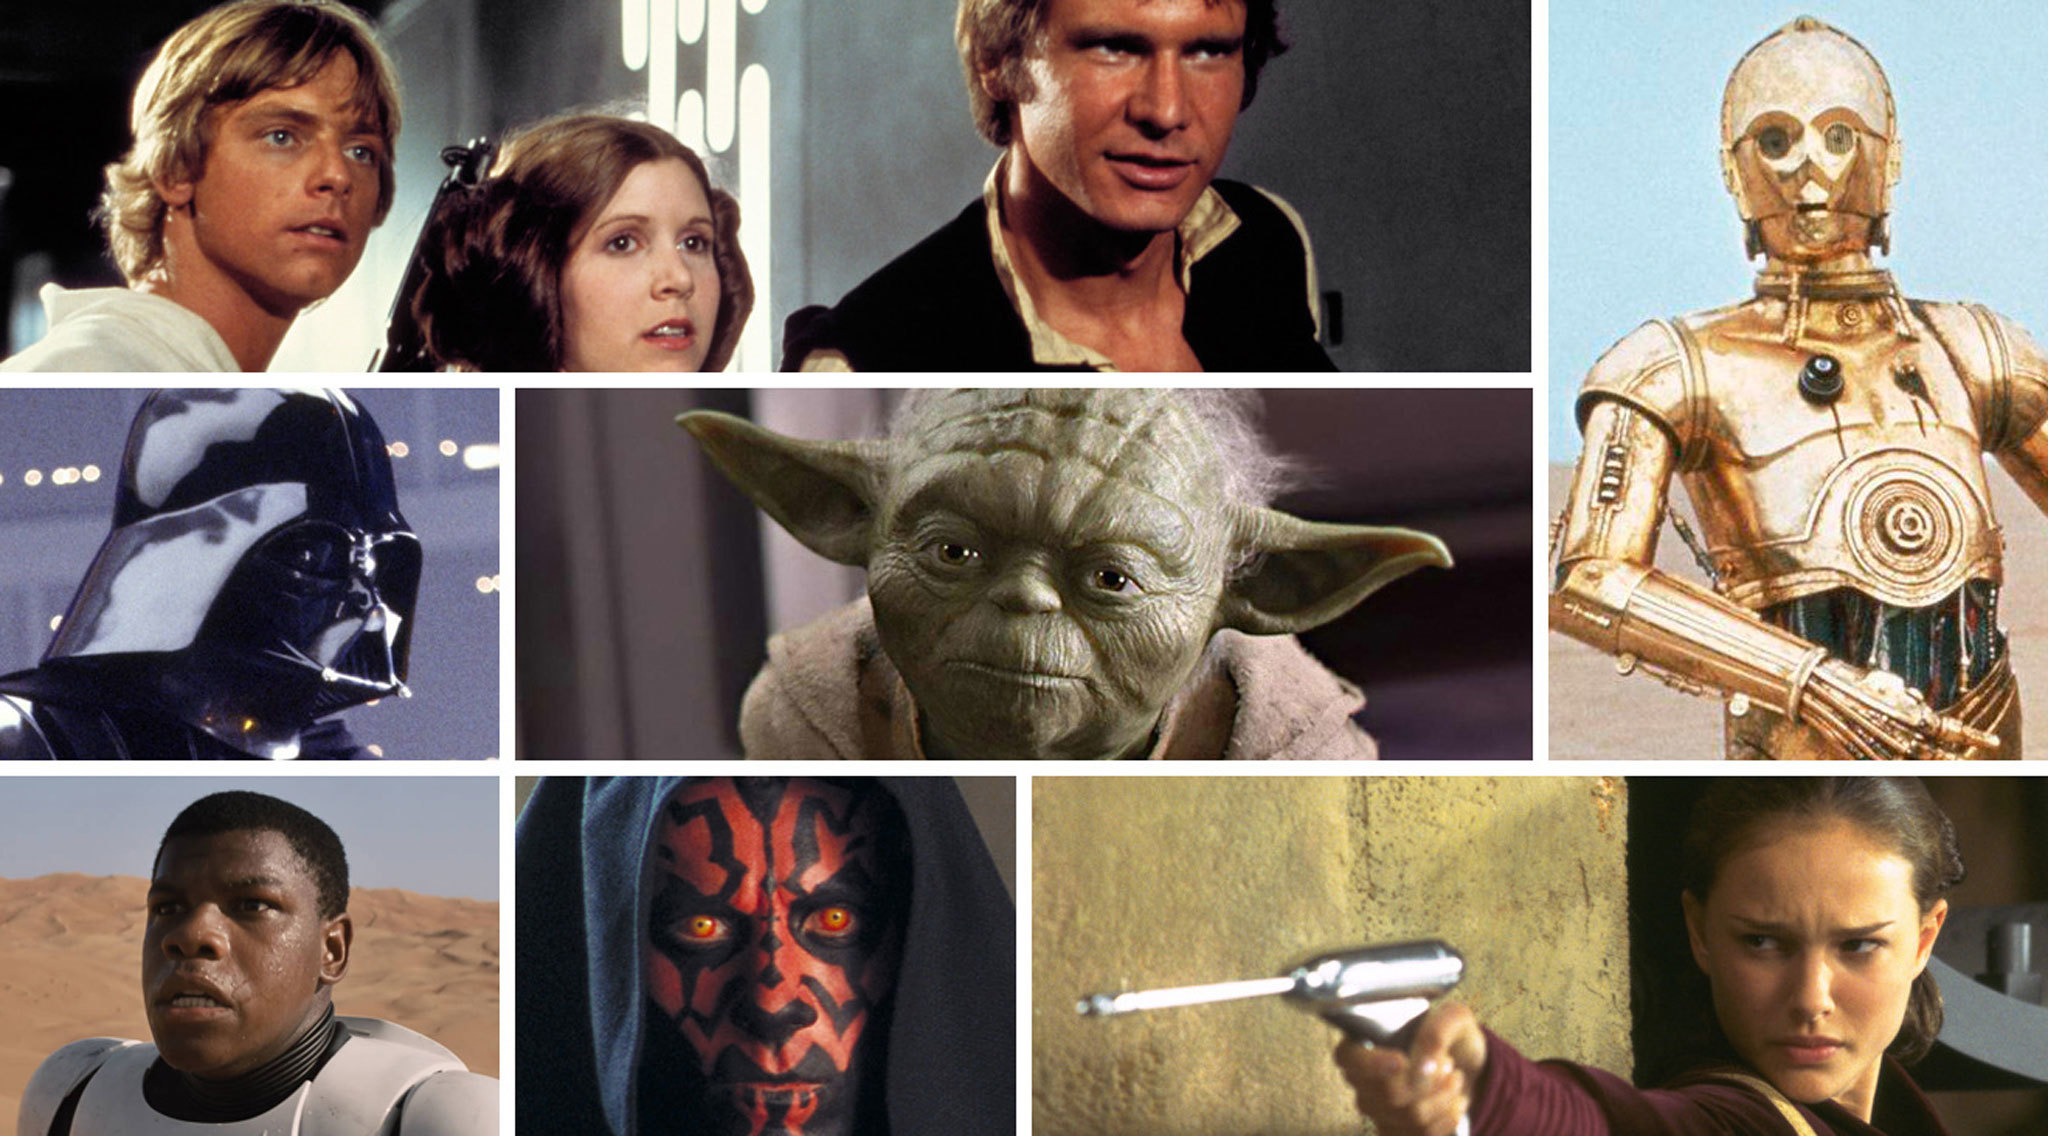 As 55 melhores personagens de Star Wars de sempre